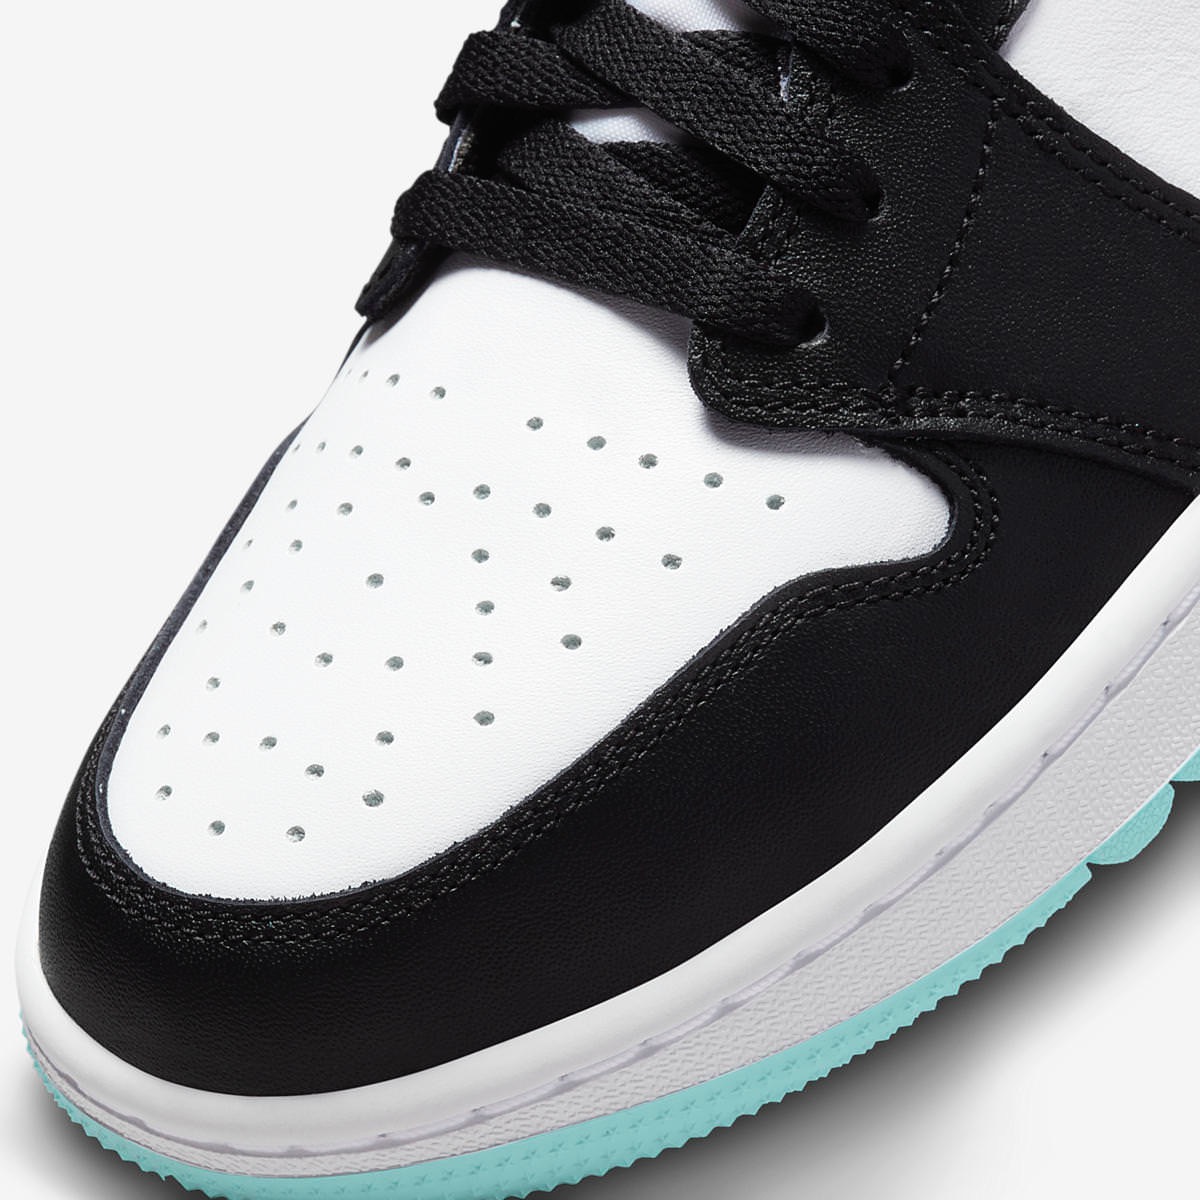 Nike Air Jordan 1 Low Golf “Copa”が国内11月24日に発売予定 | UP TO DATE